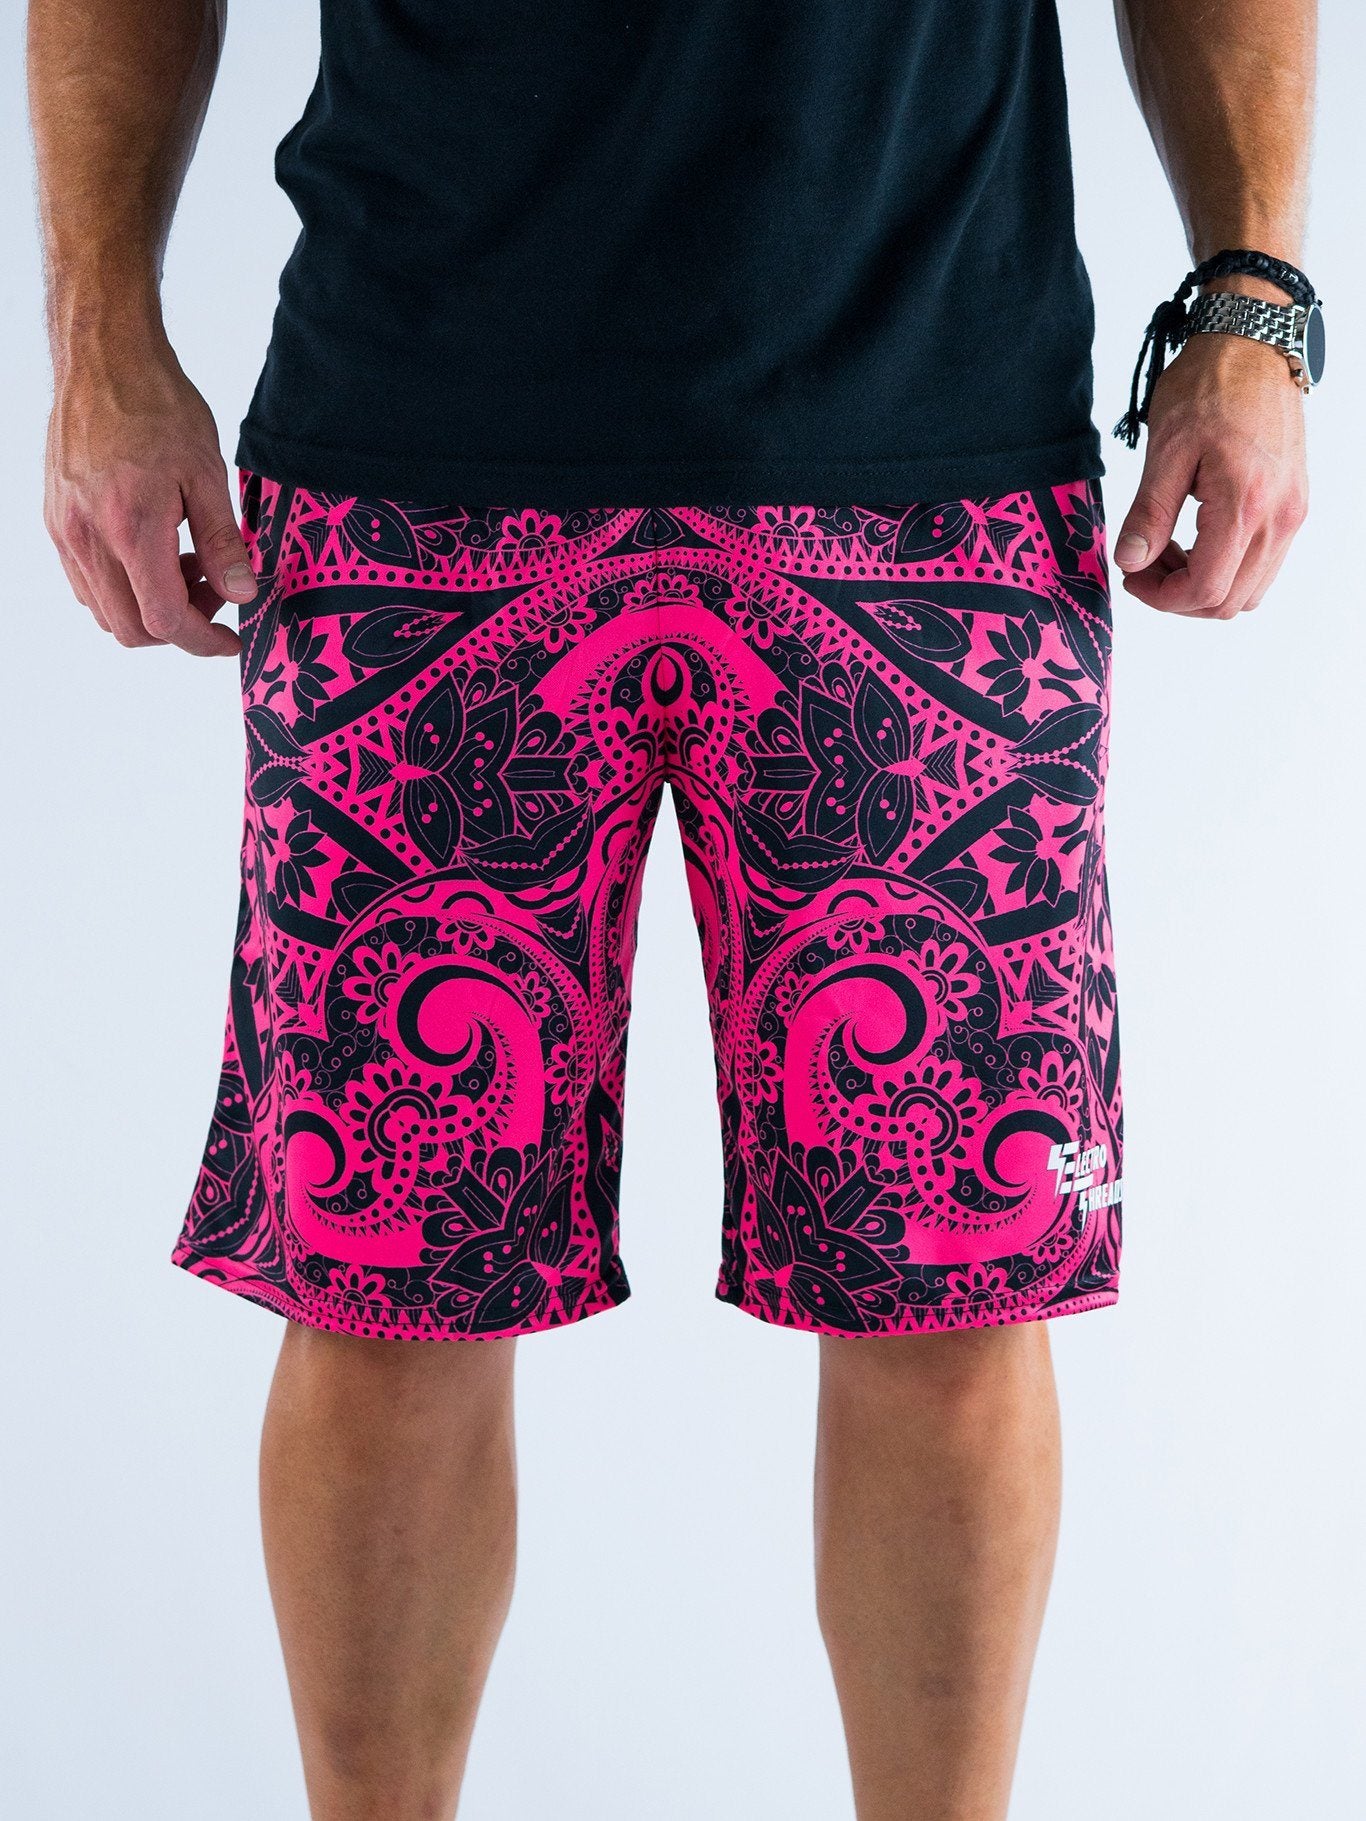 Electro Pink Mandala Shorts Mens Shorts T6 